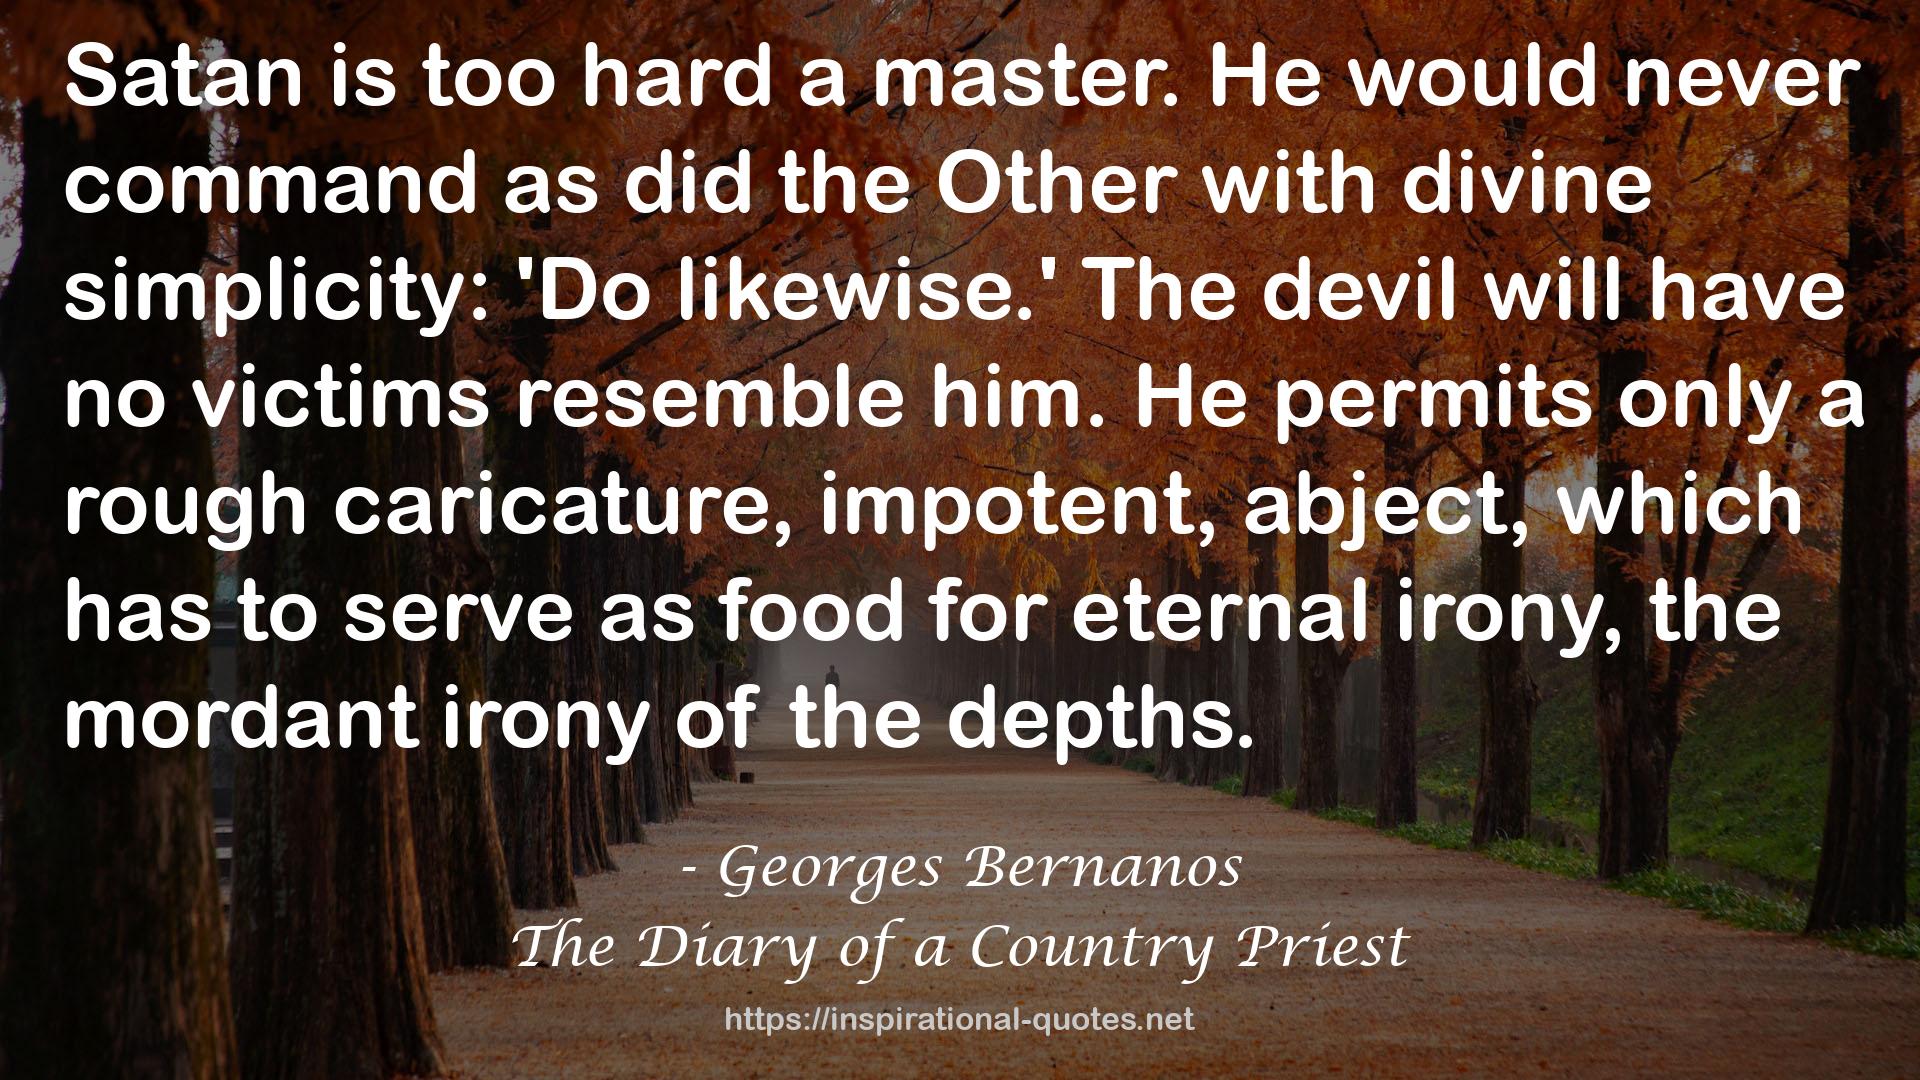 Georges Bernanos QUOTES